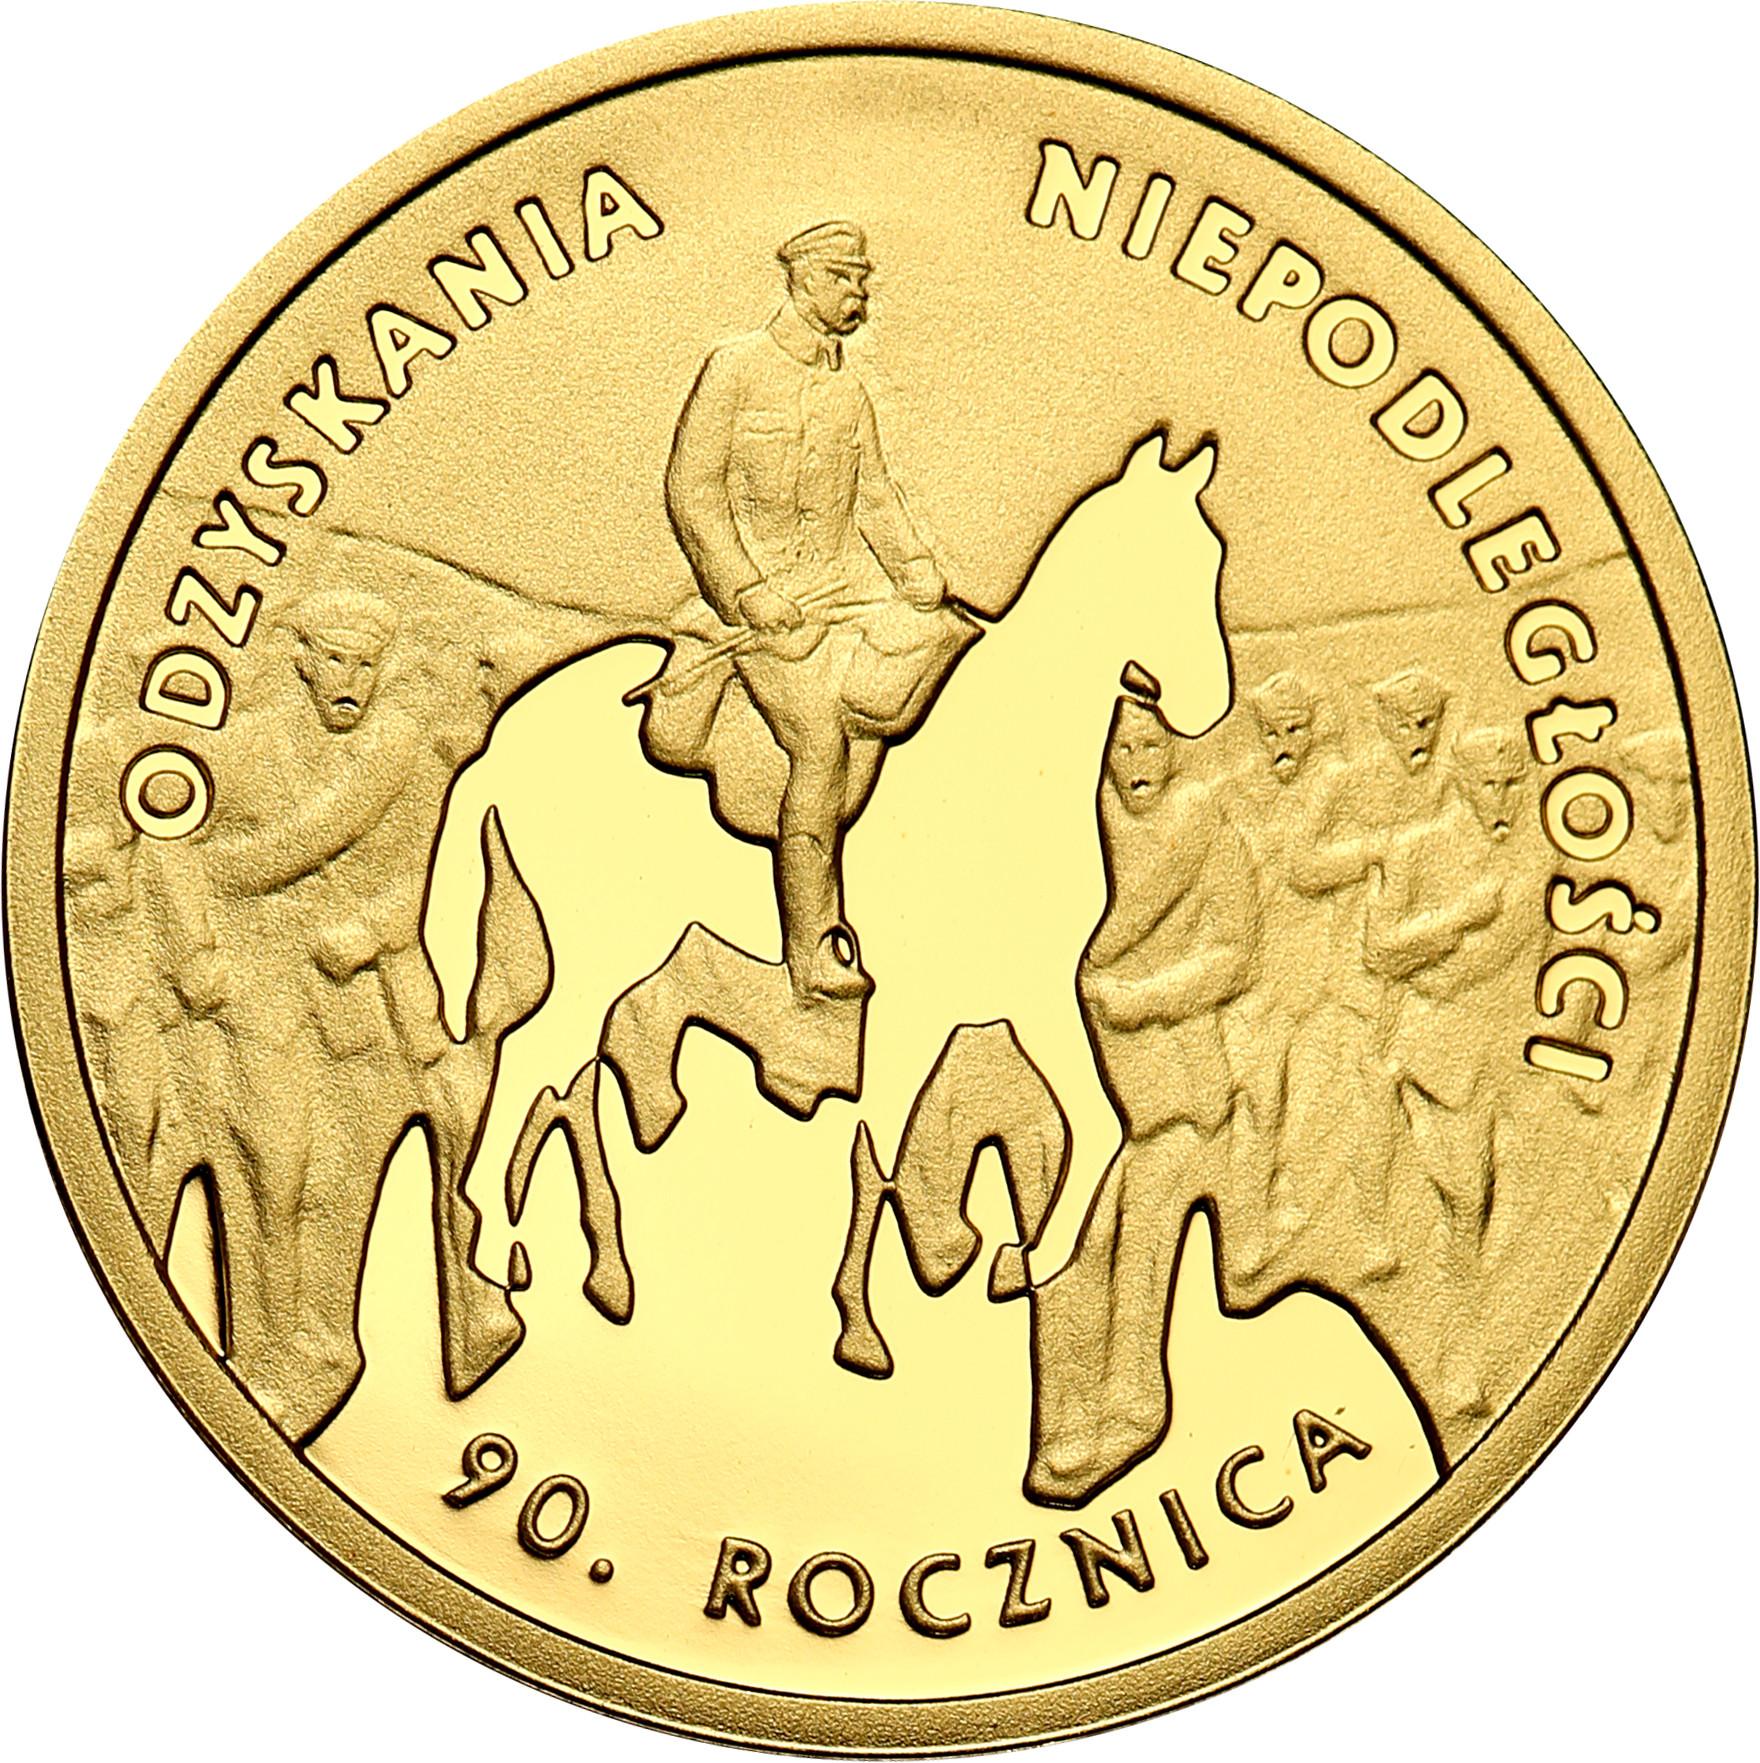 III RP. 50 złotych 2008 Rocznica Odzyskania Niepodległości Piłsudski